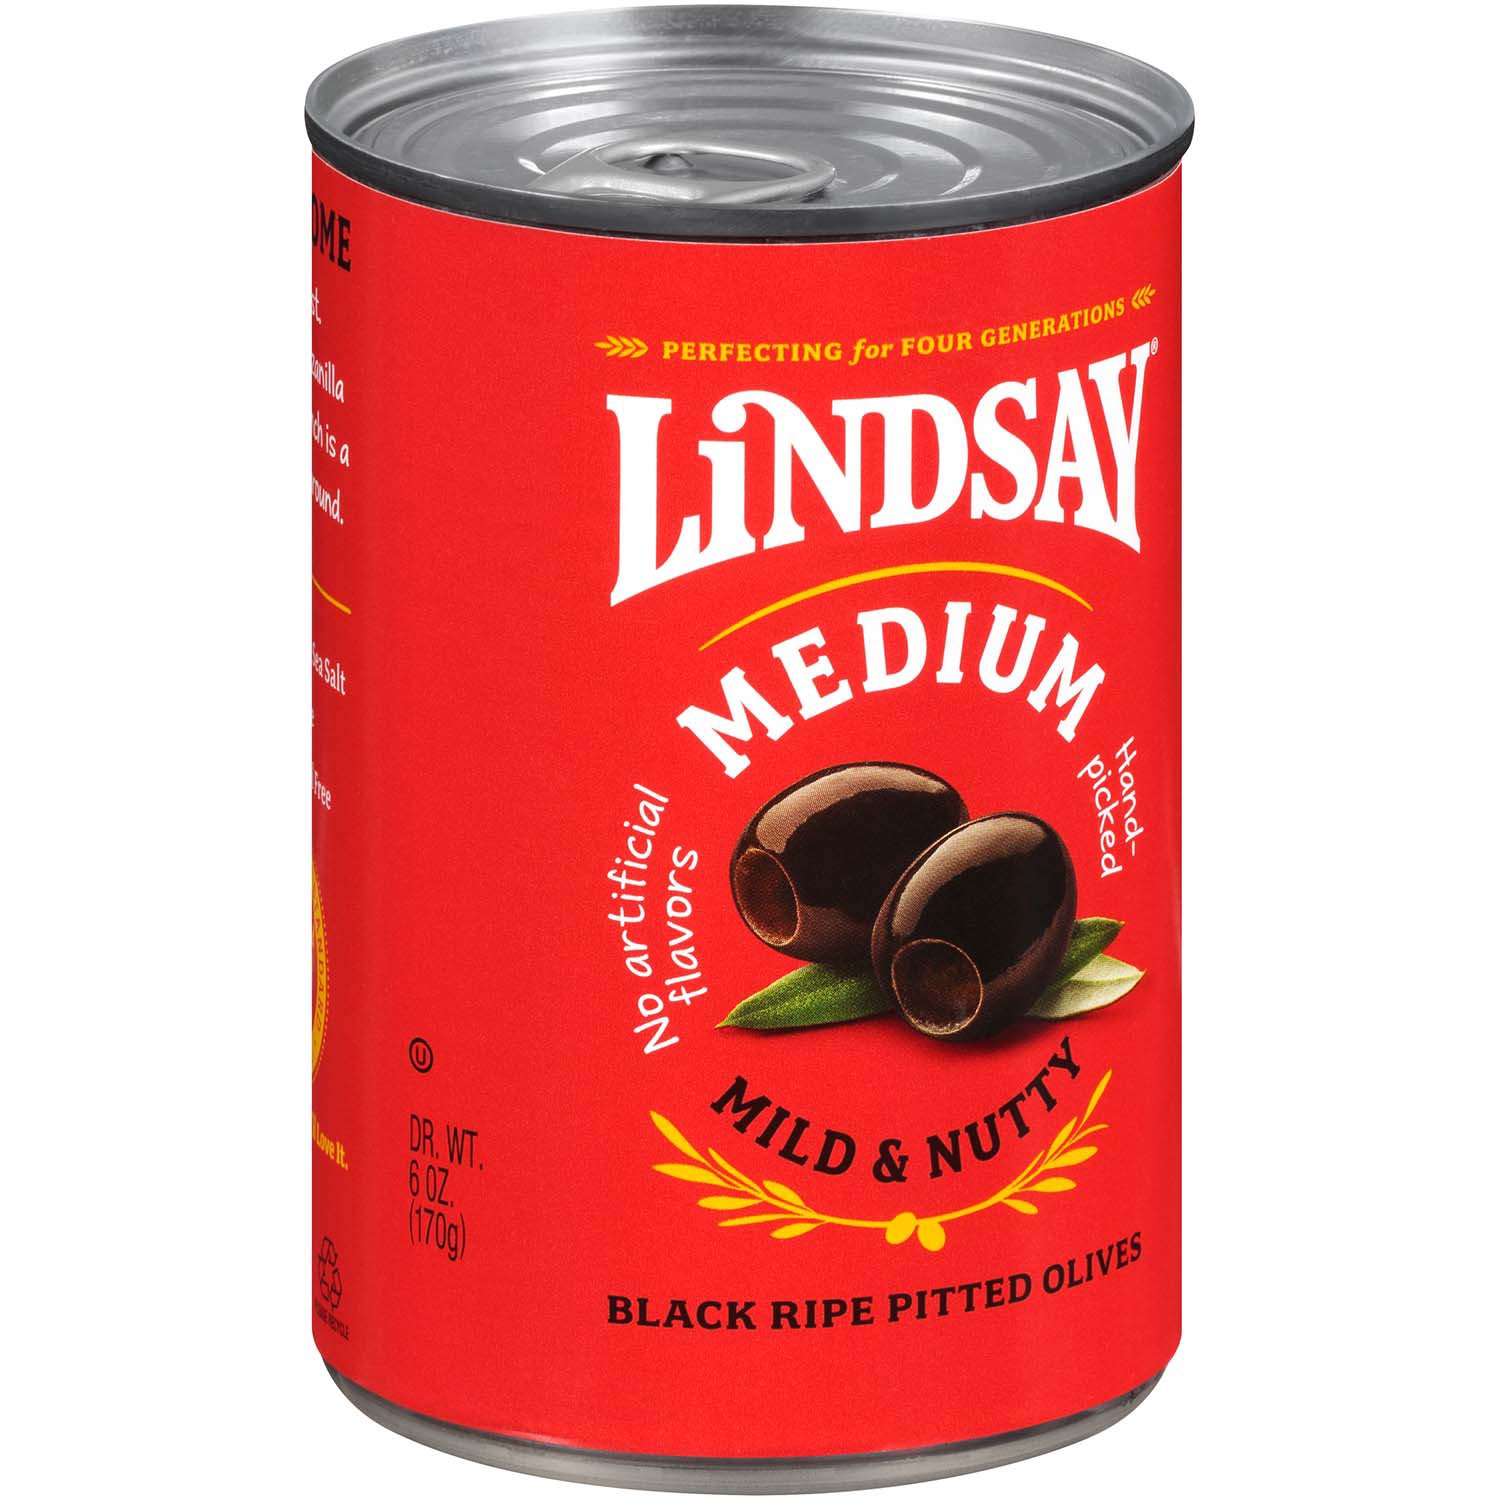 Lindsay Pitted Olives Black Ripe Medium